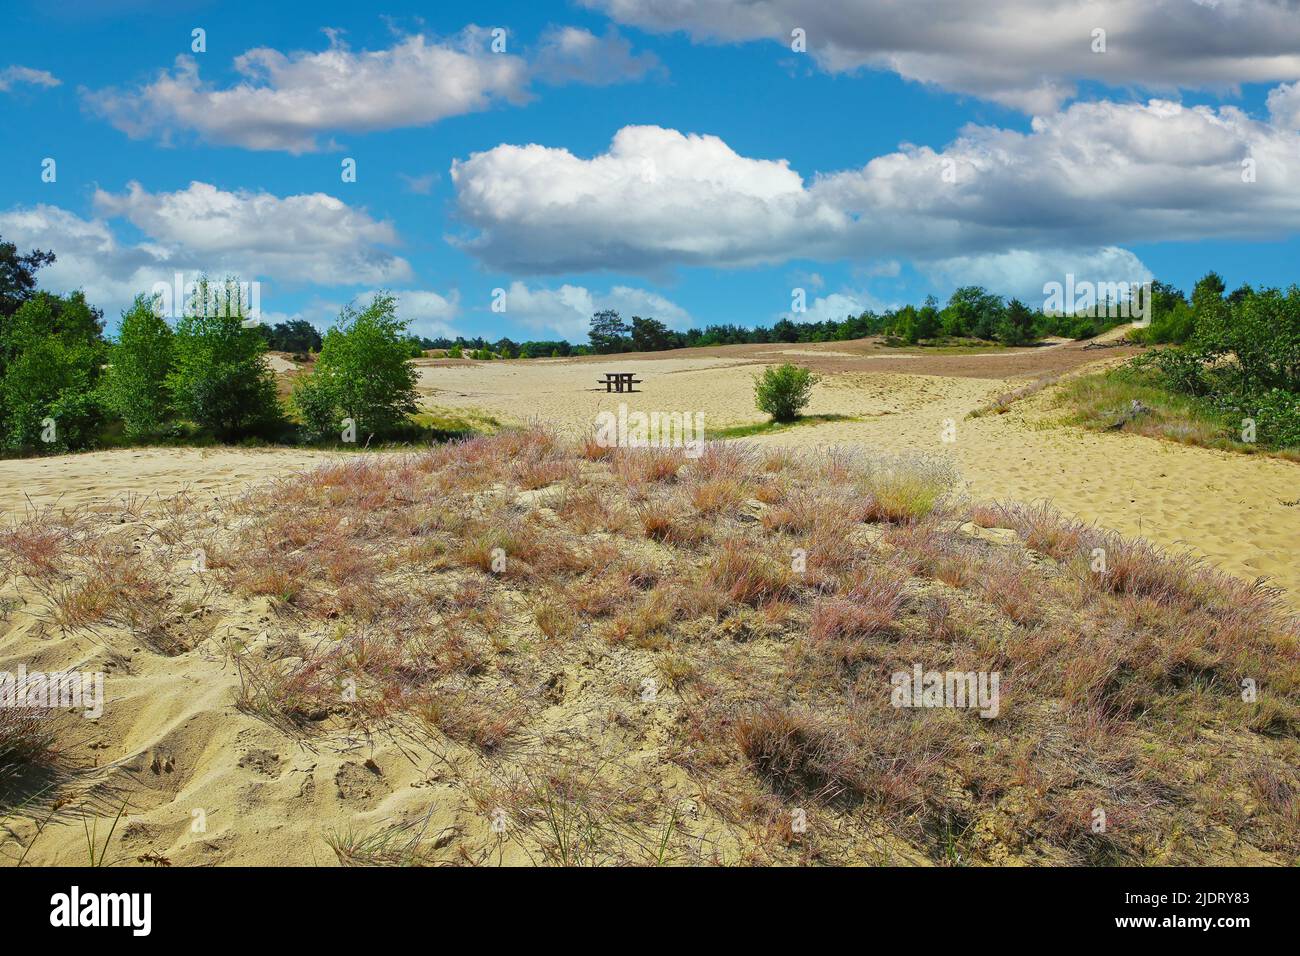 Beautiful dutch landscape, drifting sand dunes plateau, green forest trees, blue summer sky fluffy clouds - Maasduinen NP, Netherlands Stock Photo